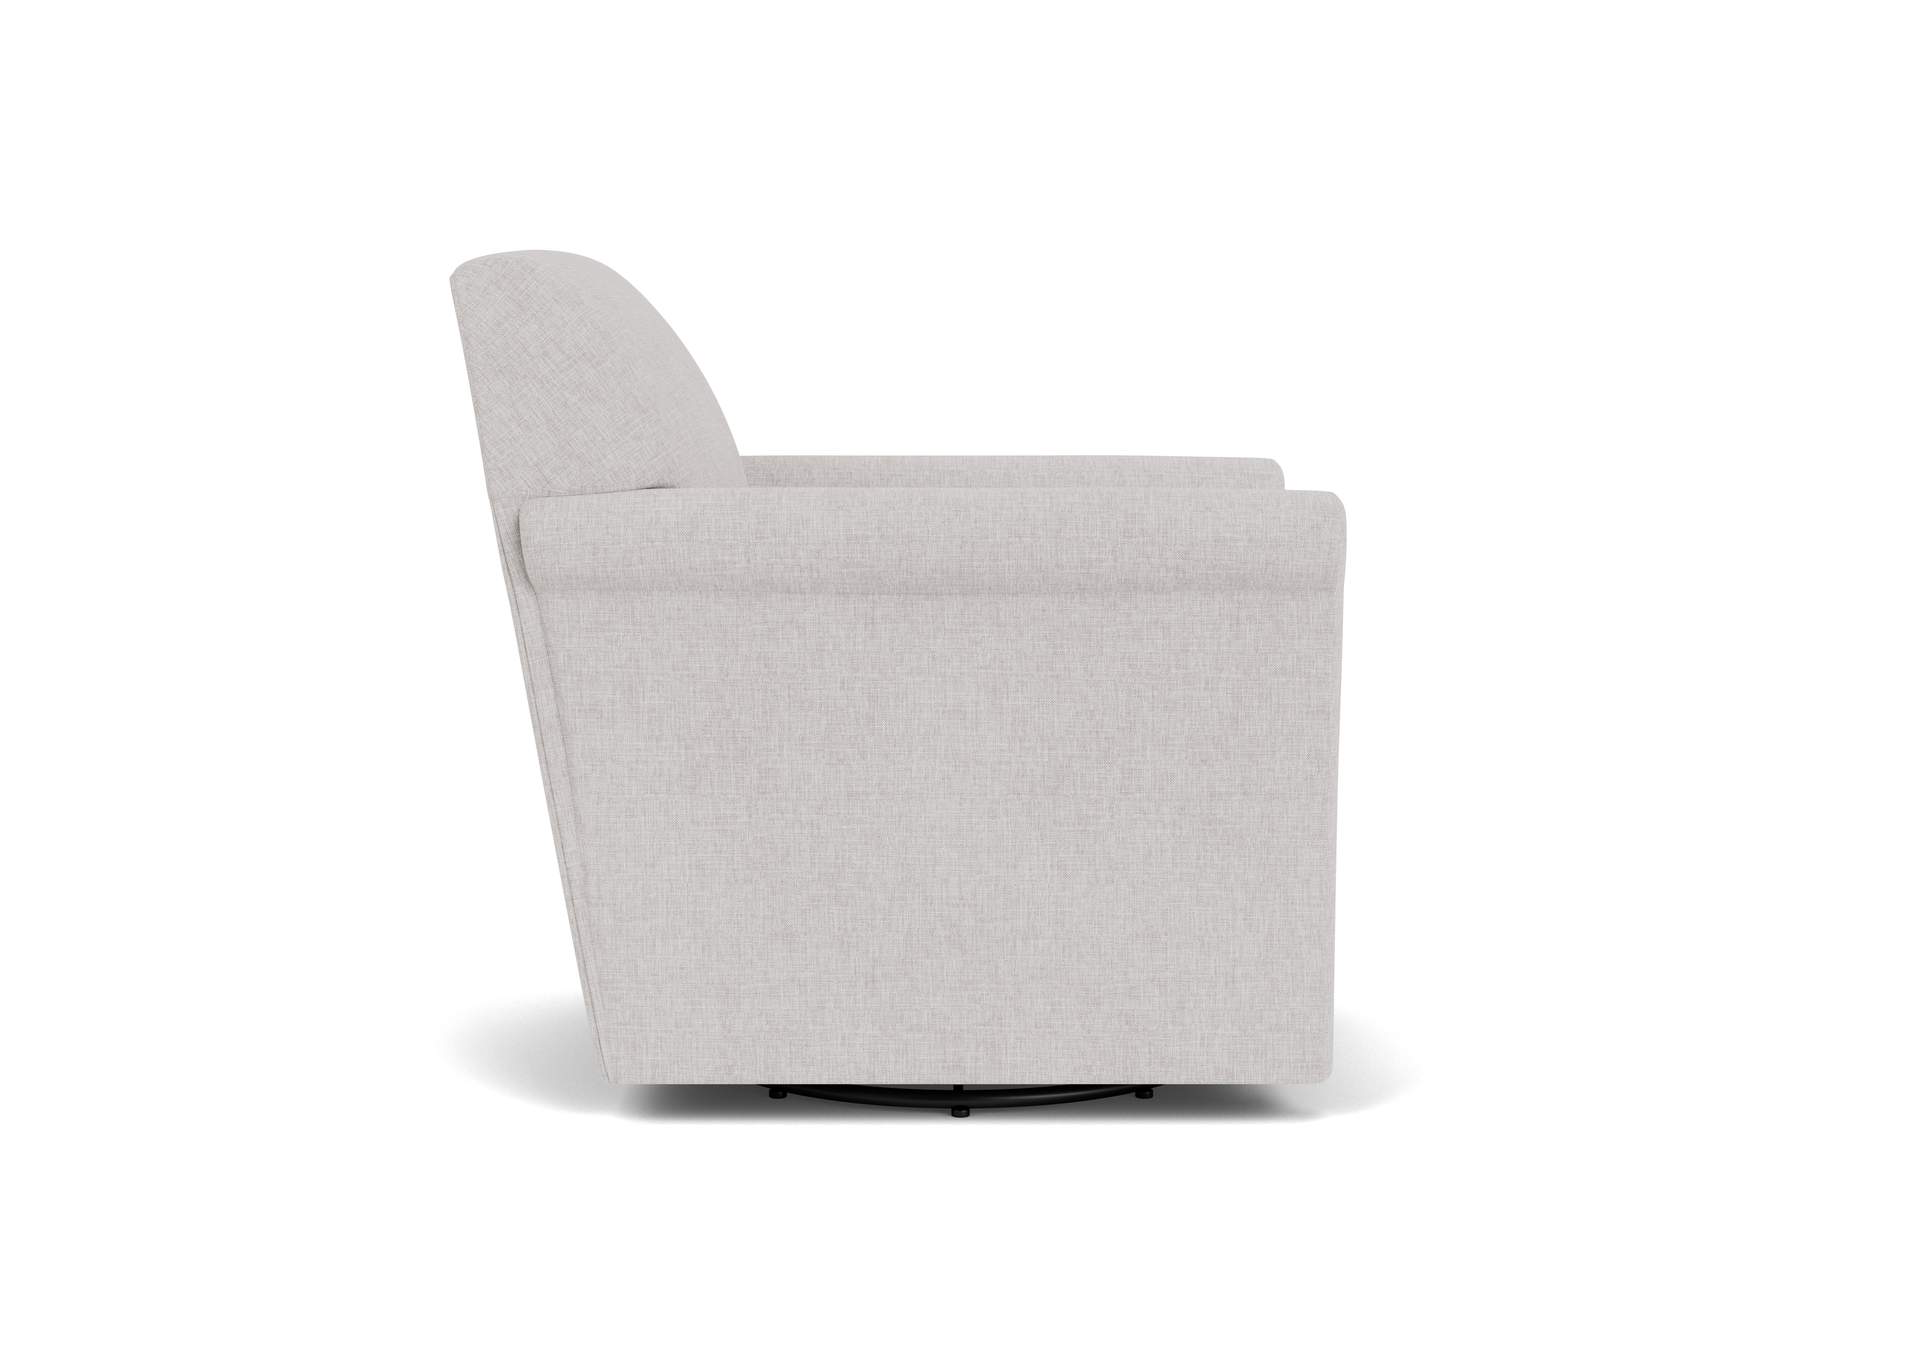 Stella Swivel Chair,Flexsteel